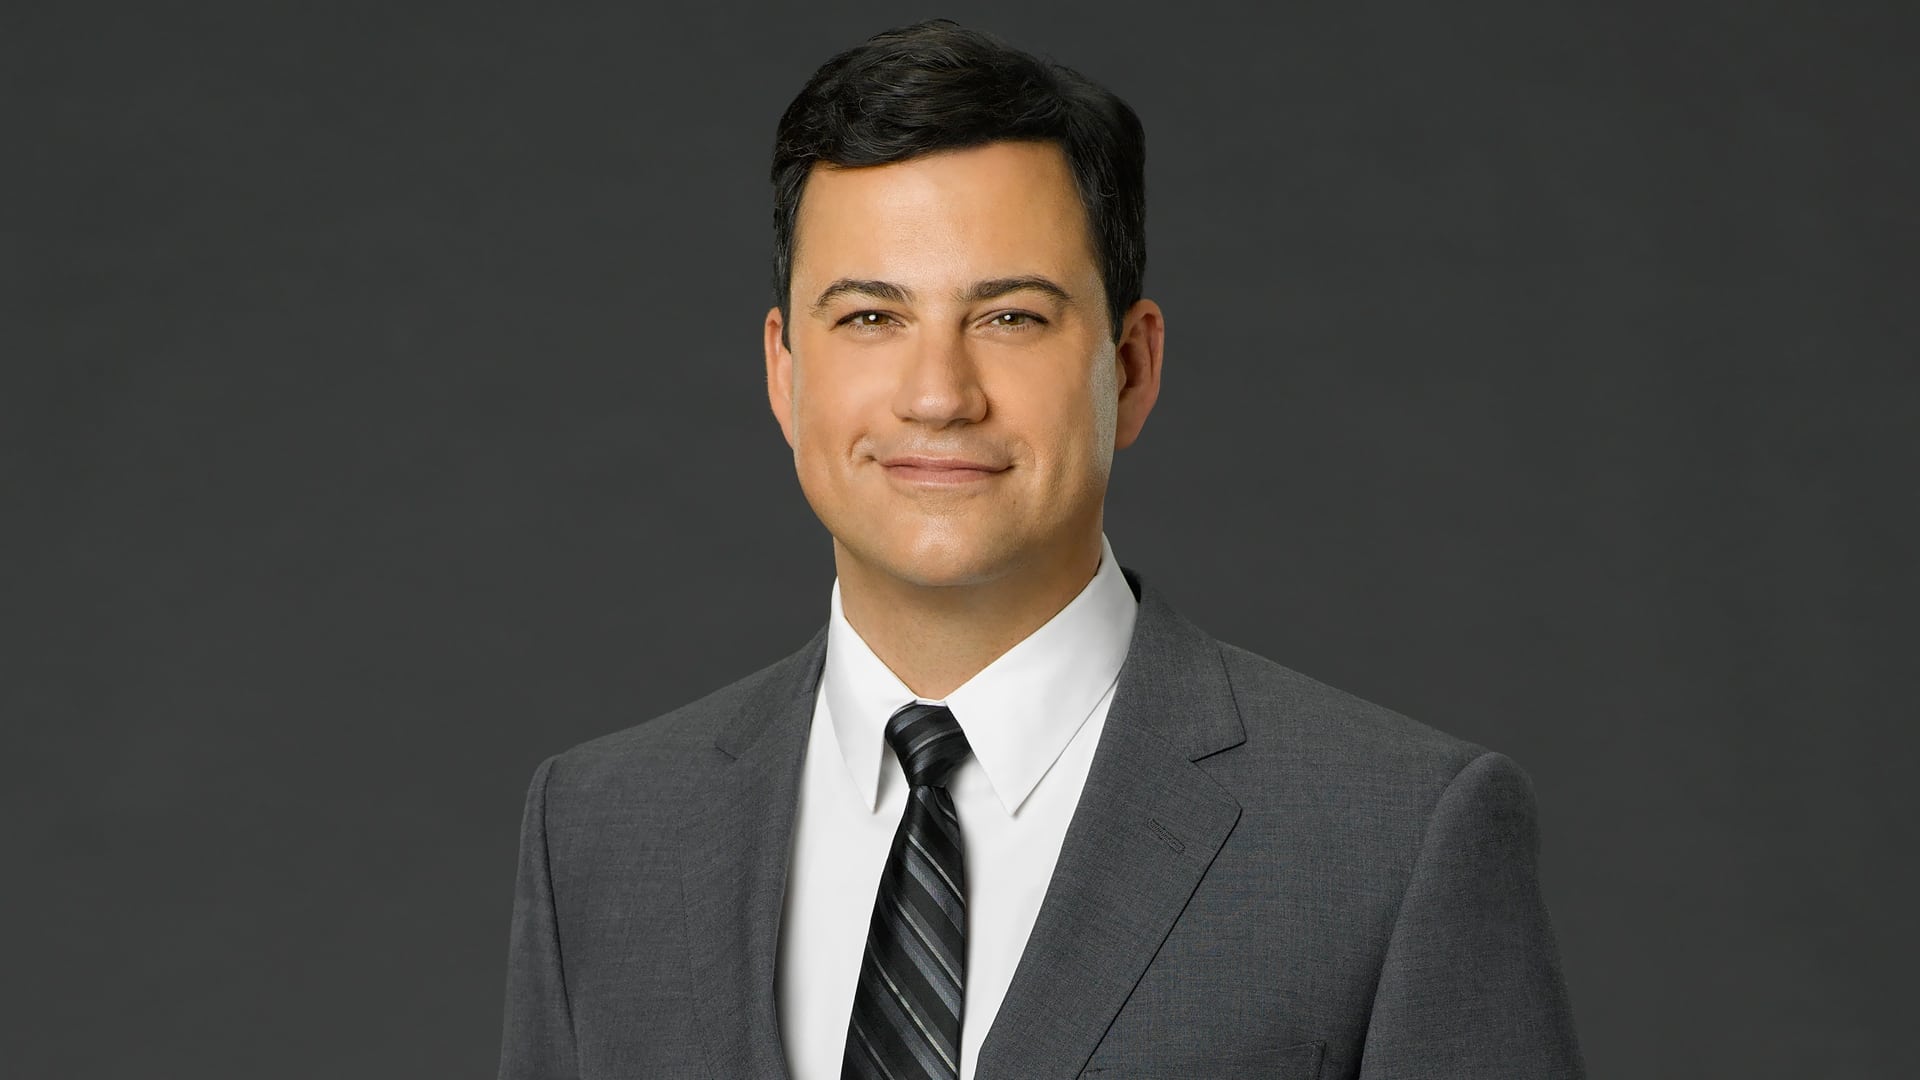 Jimmy Kimmel Live! - Season 22 Episode 95